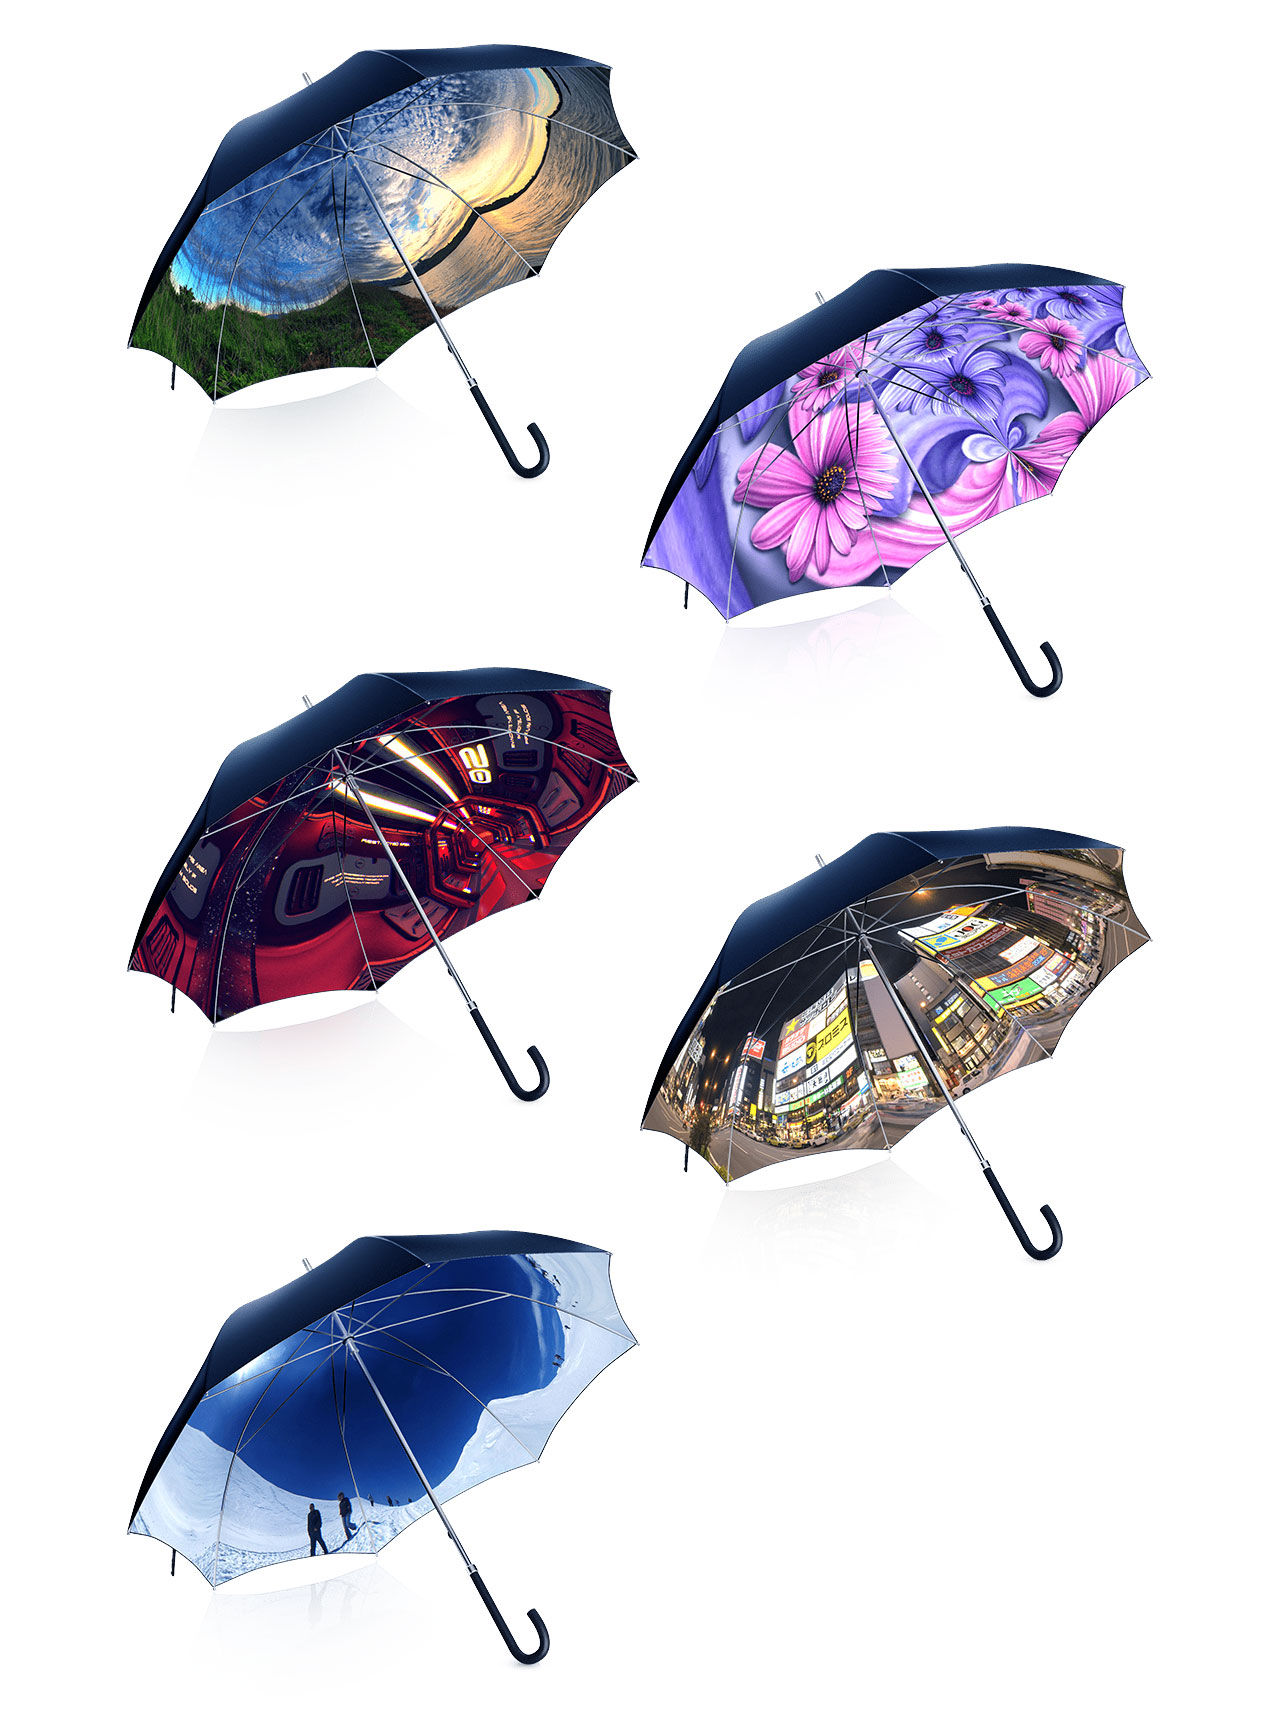 Ett paraply med ditt eget 360°-motiv